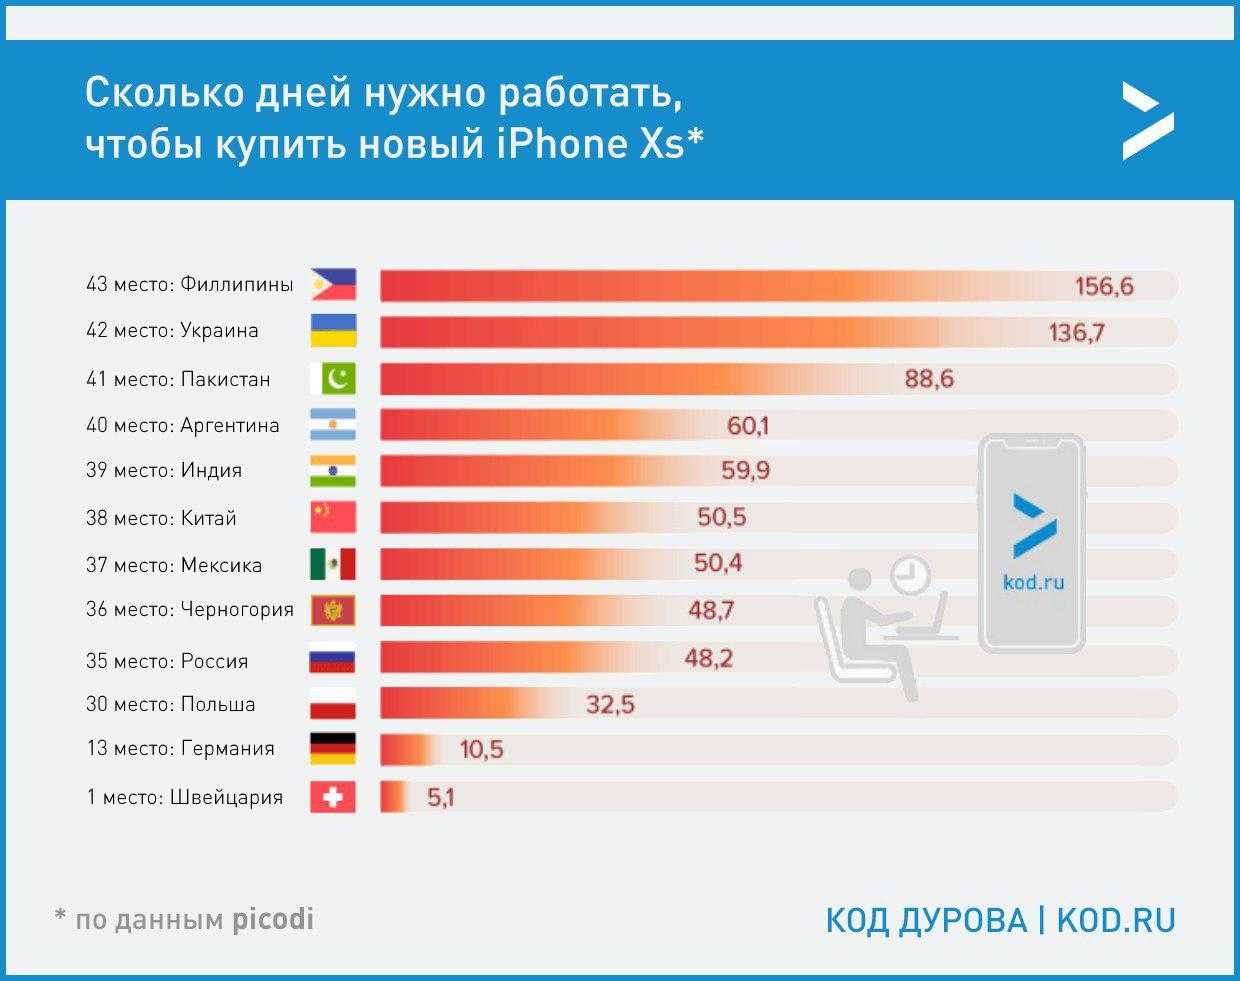 Сколько надо сайтов. Сколько нужно работать. Работать в разных странах. Количество айфоном в разных странах. Сколько нужно работать на айфон в разных странах.